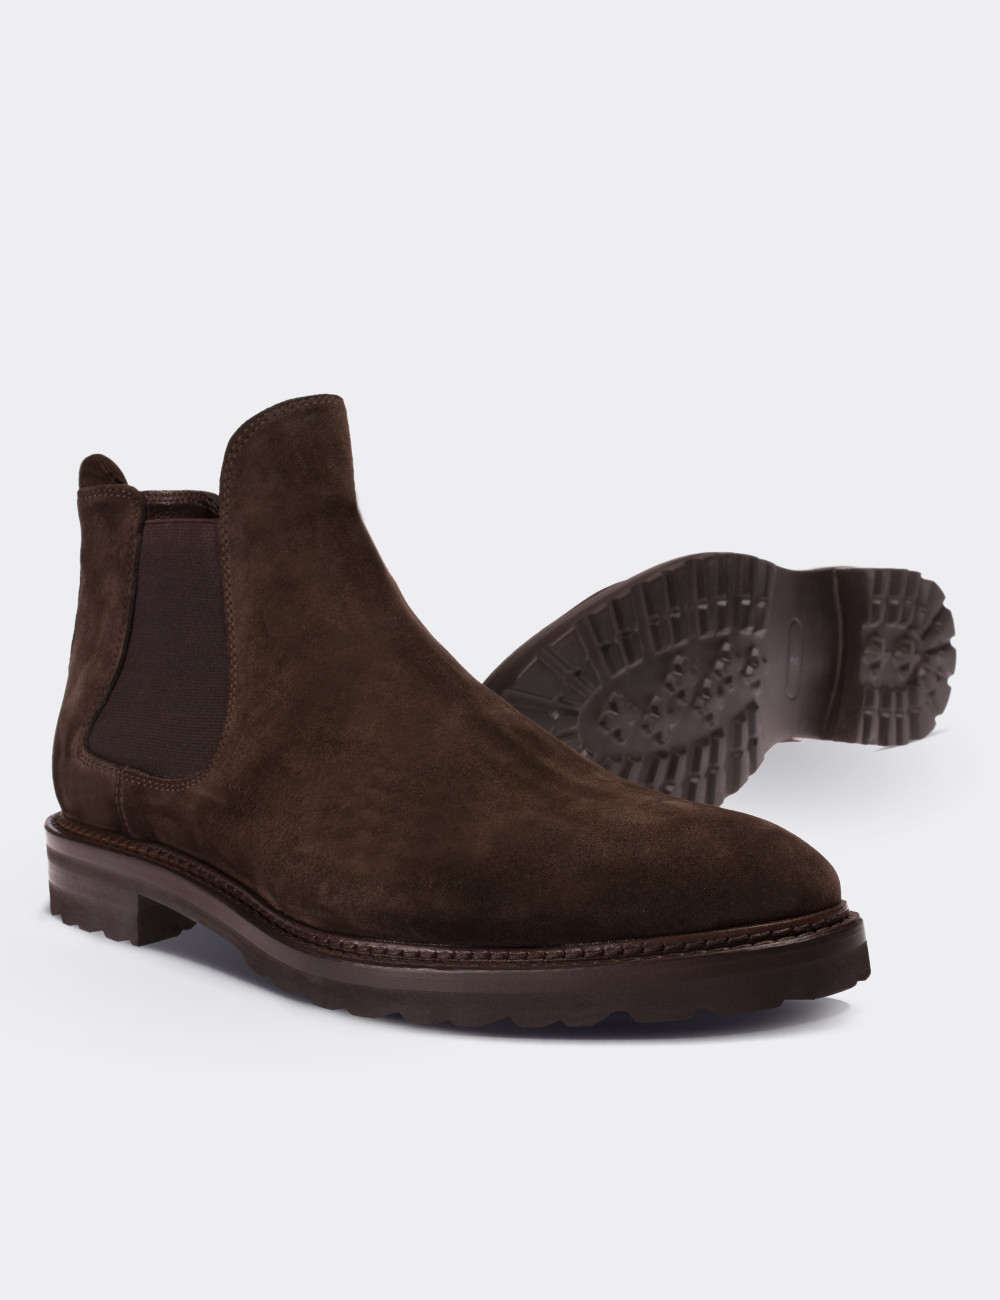 Brown Suede Calfskin Chelsea Boots - Deery